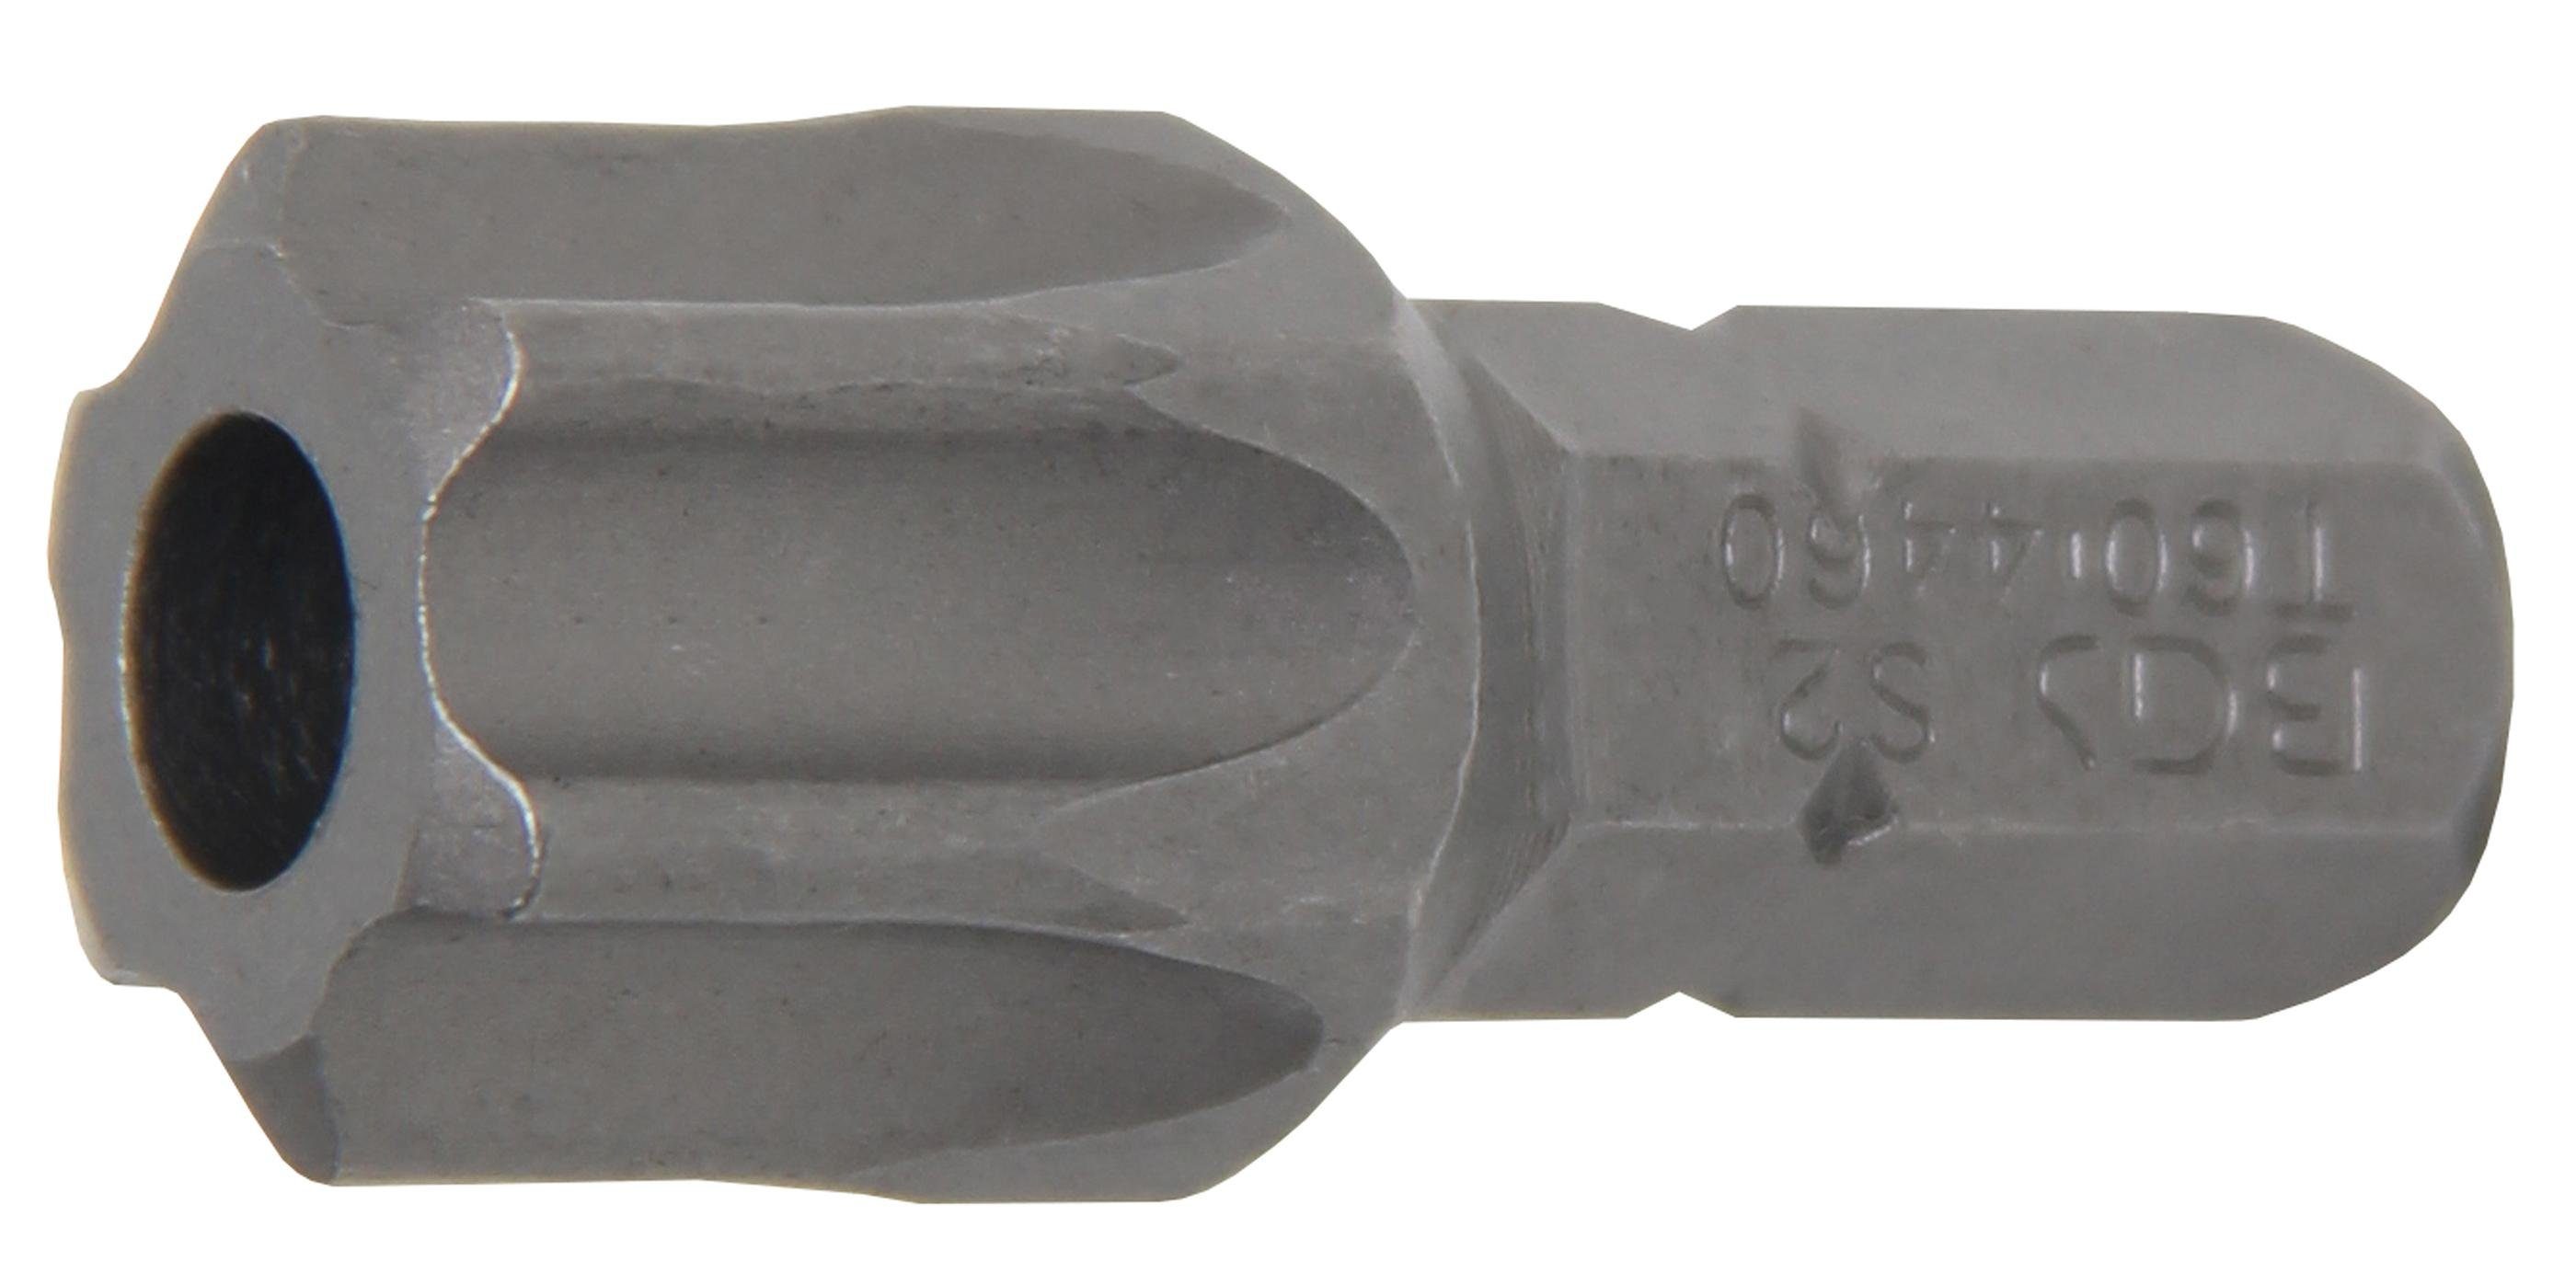 BGS technic Bit-Schraubendreher Bit, Länge 30 mm, Antrieb Außensechskant 8 mm (5/16), T-Profil (für Torx) mit Bohrung T60 | Schraubendreher